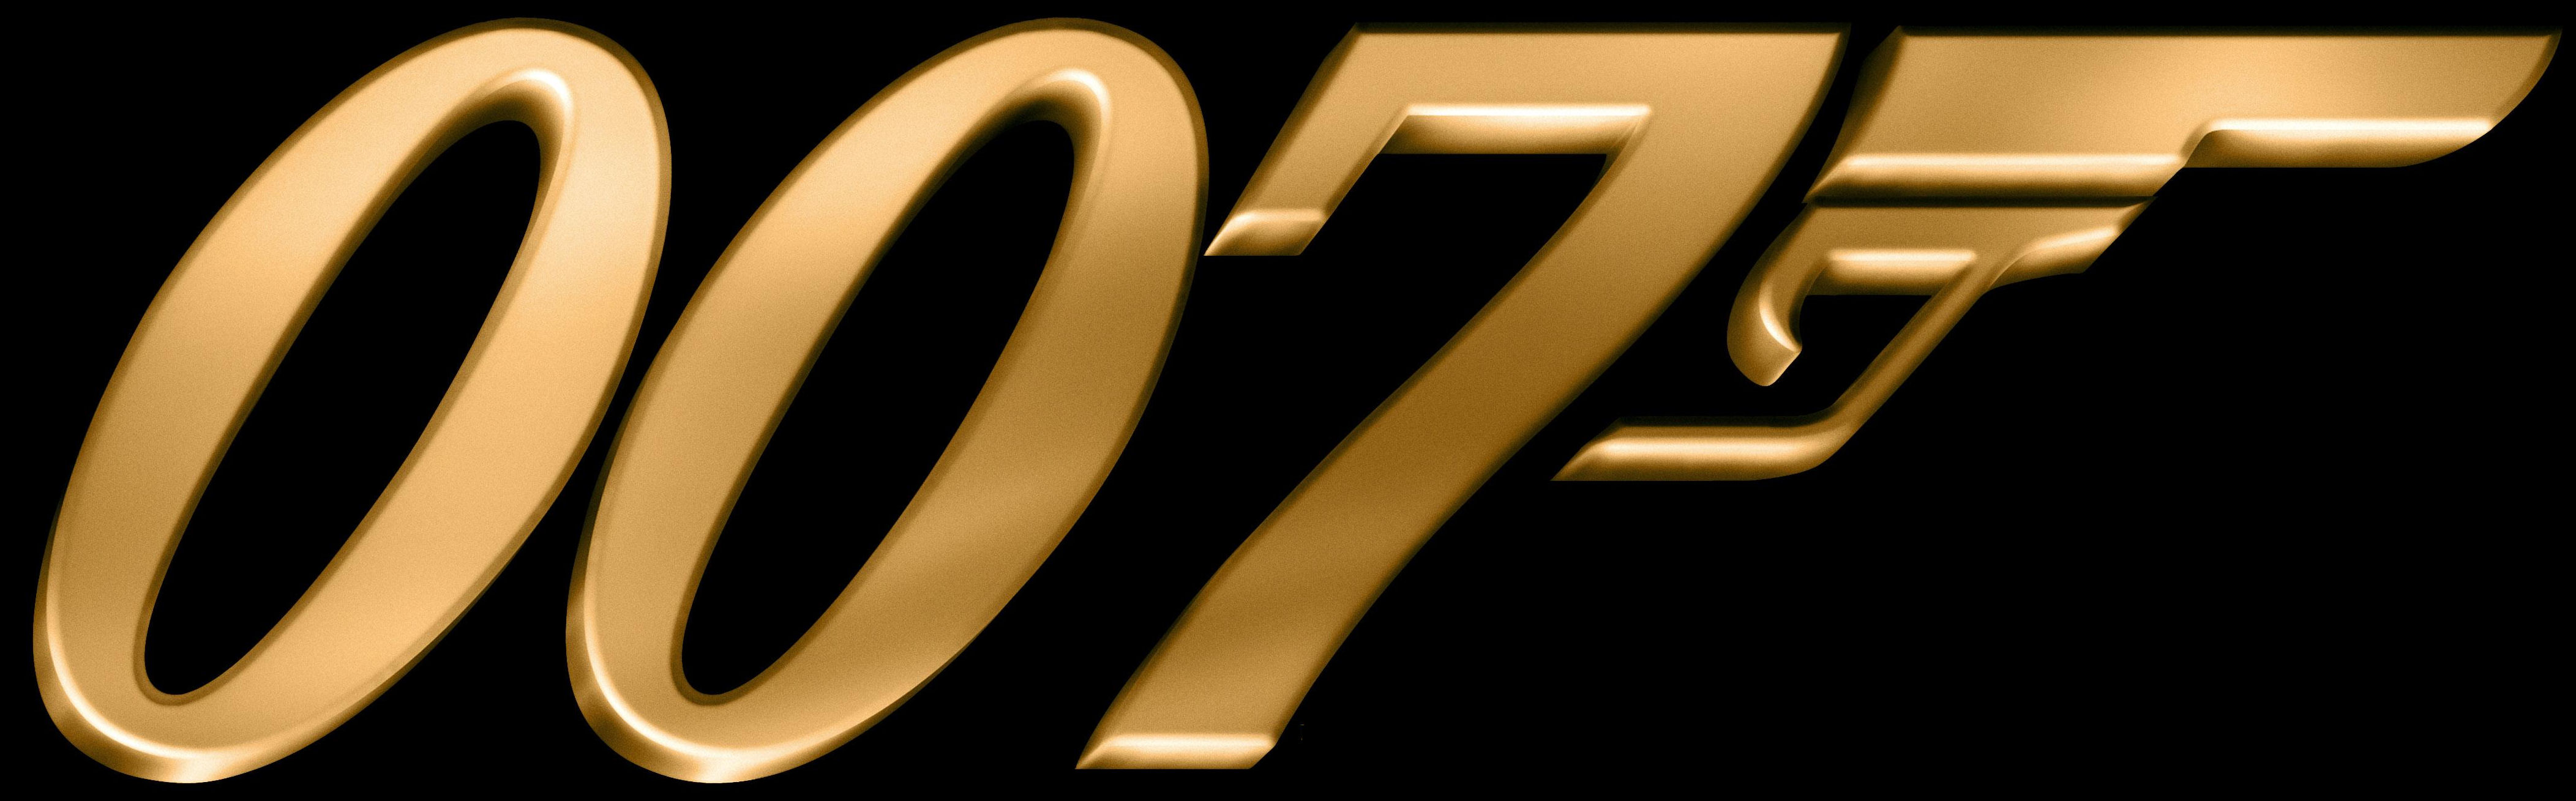 007-logo-gold.jpg